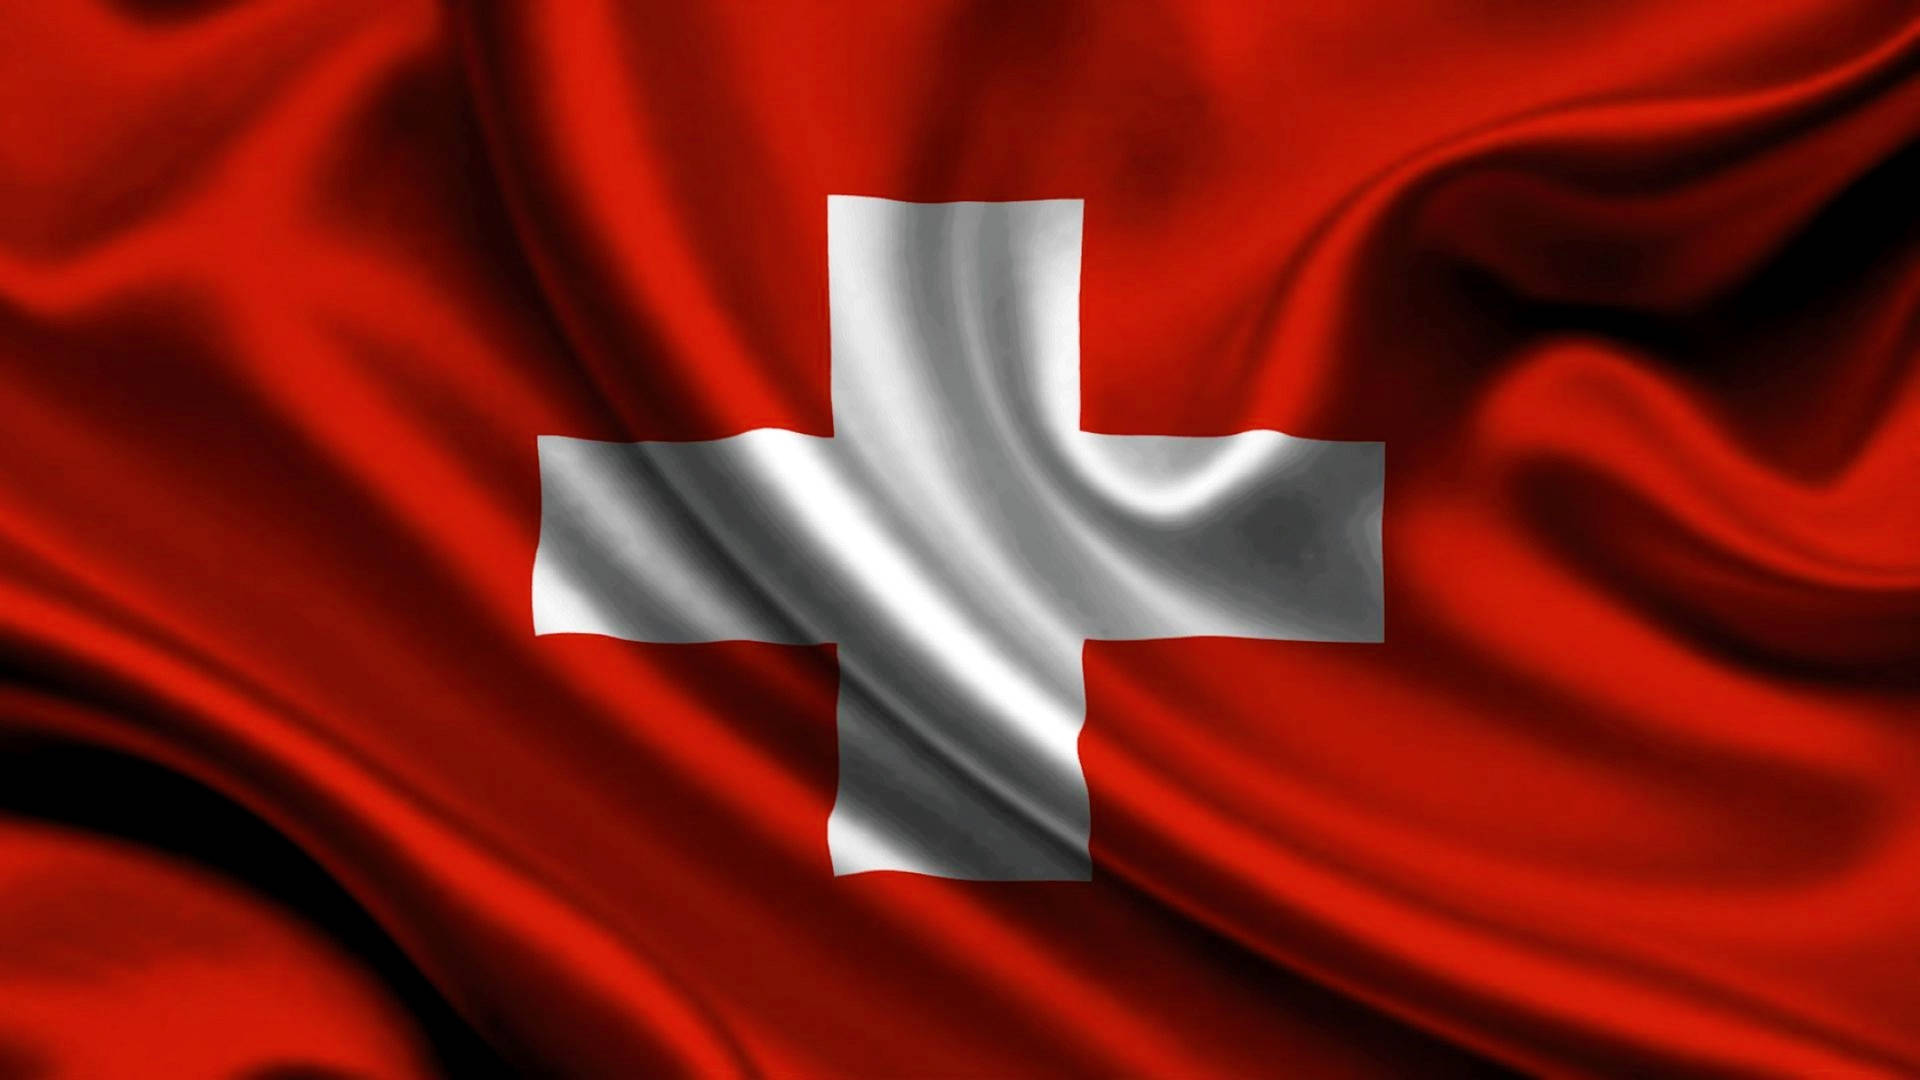 Switzerland's National Flag Background